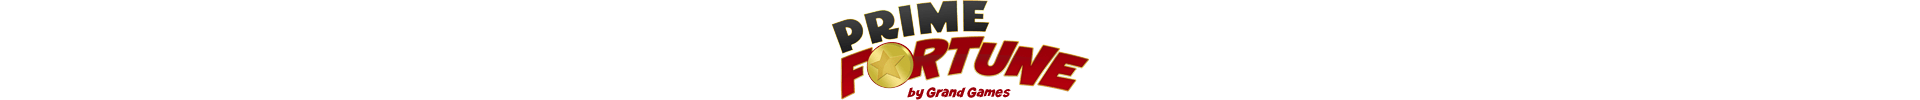 Prime Fortune casino logo.